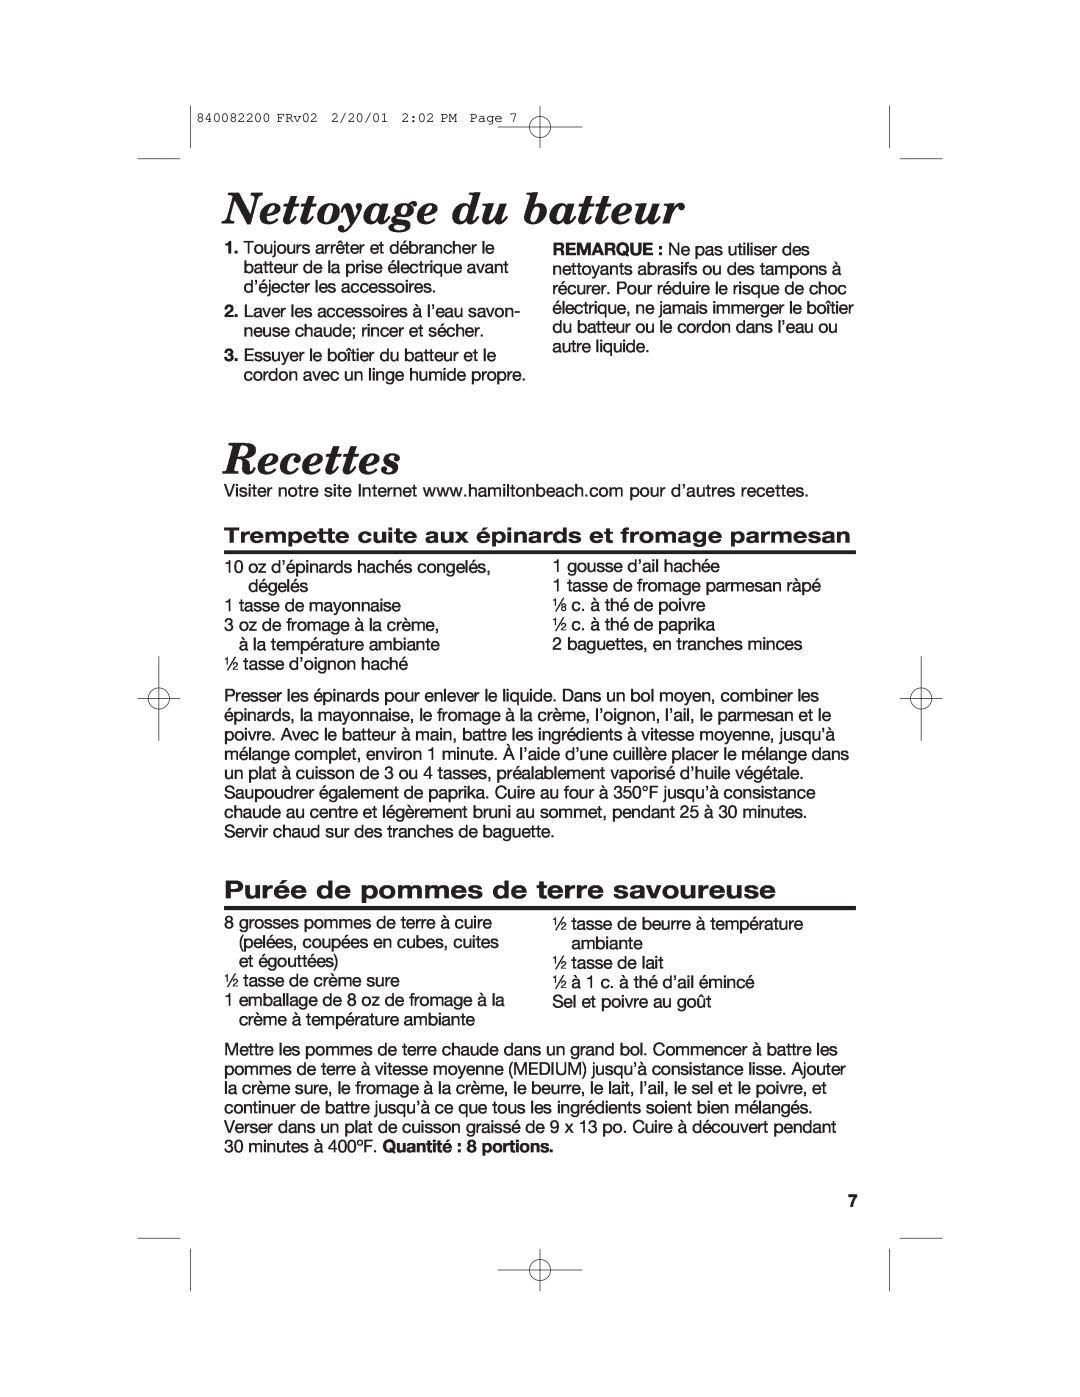 Hamilton Beach 62695RC manual Nettoyage du batteur, Recettes, Purée de pommes de terre savoureuse 